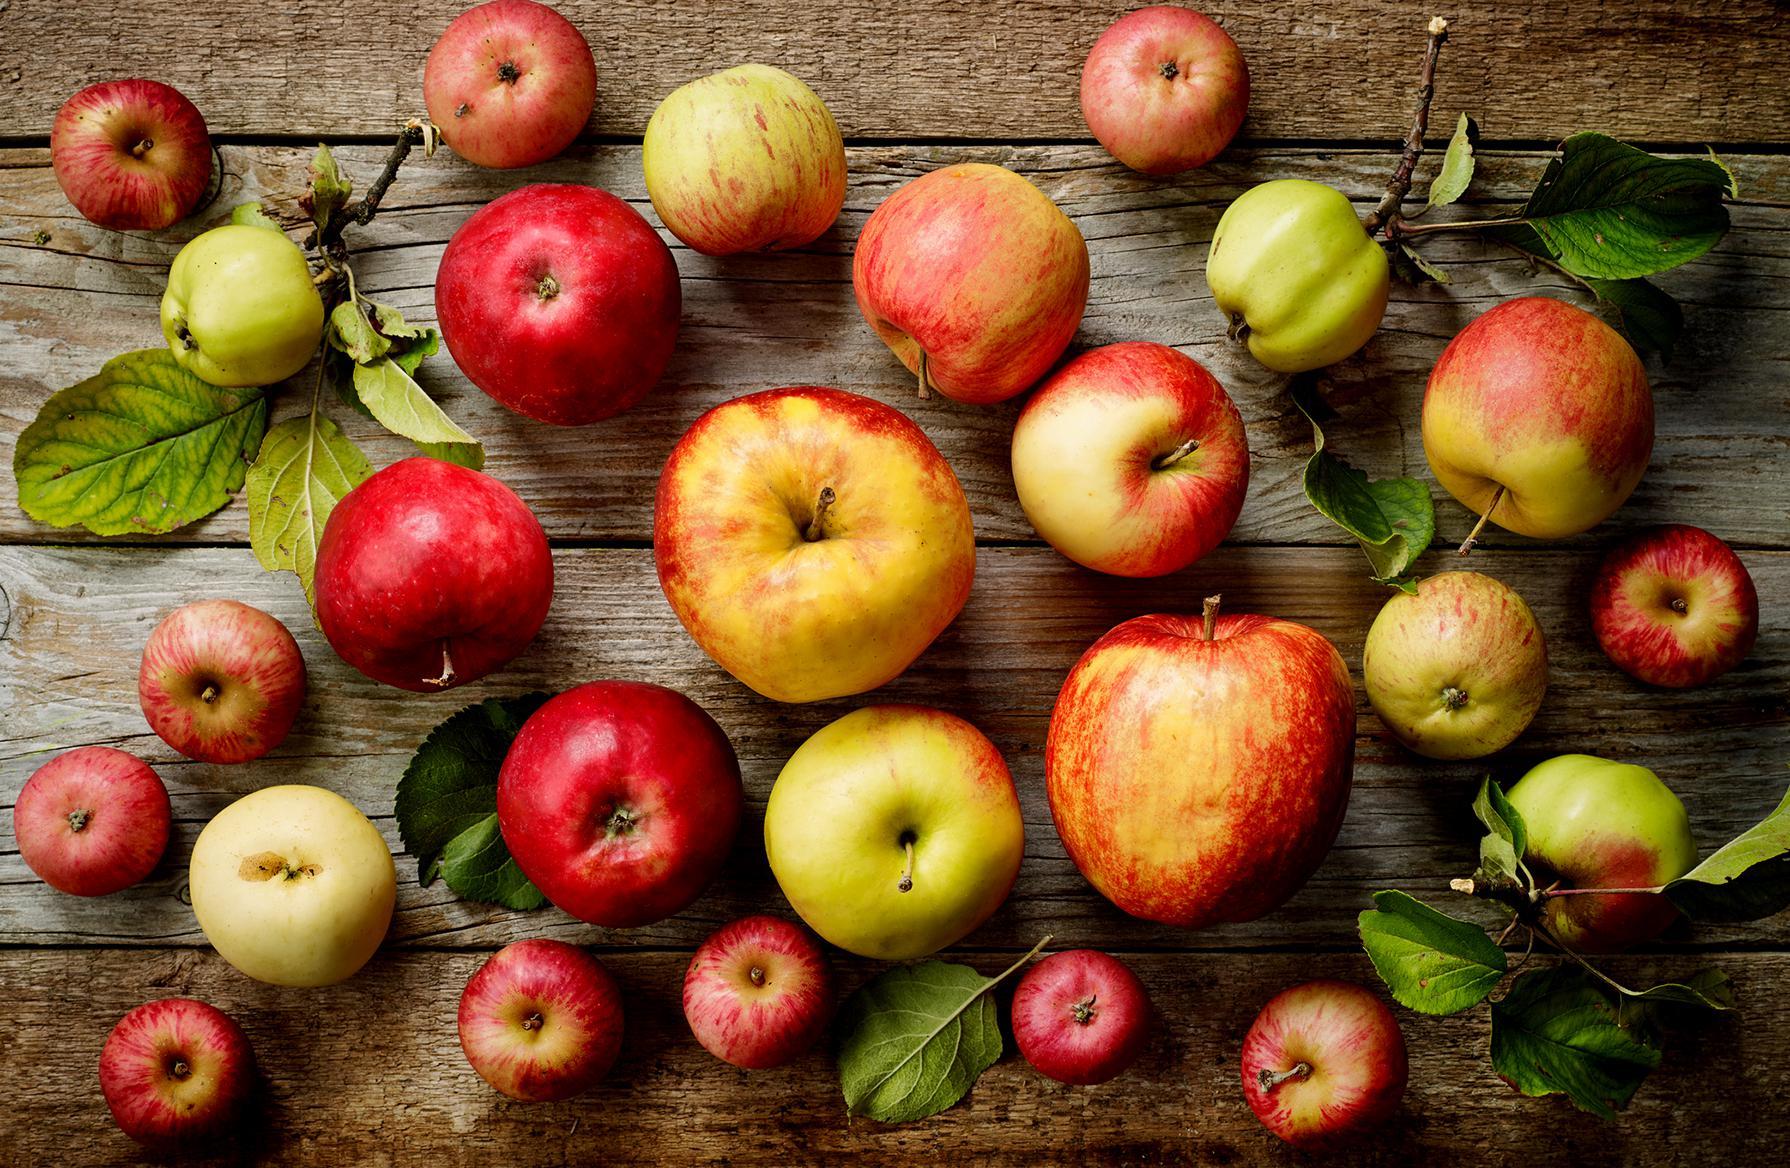 Varieties of apple